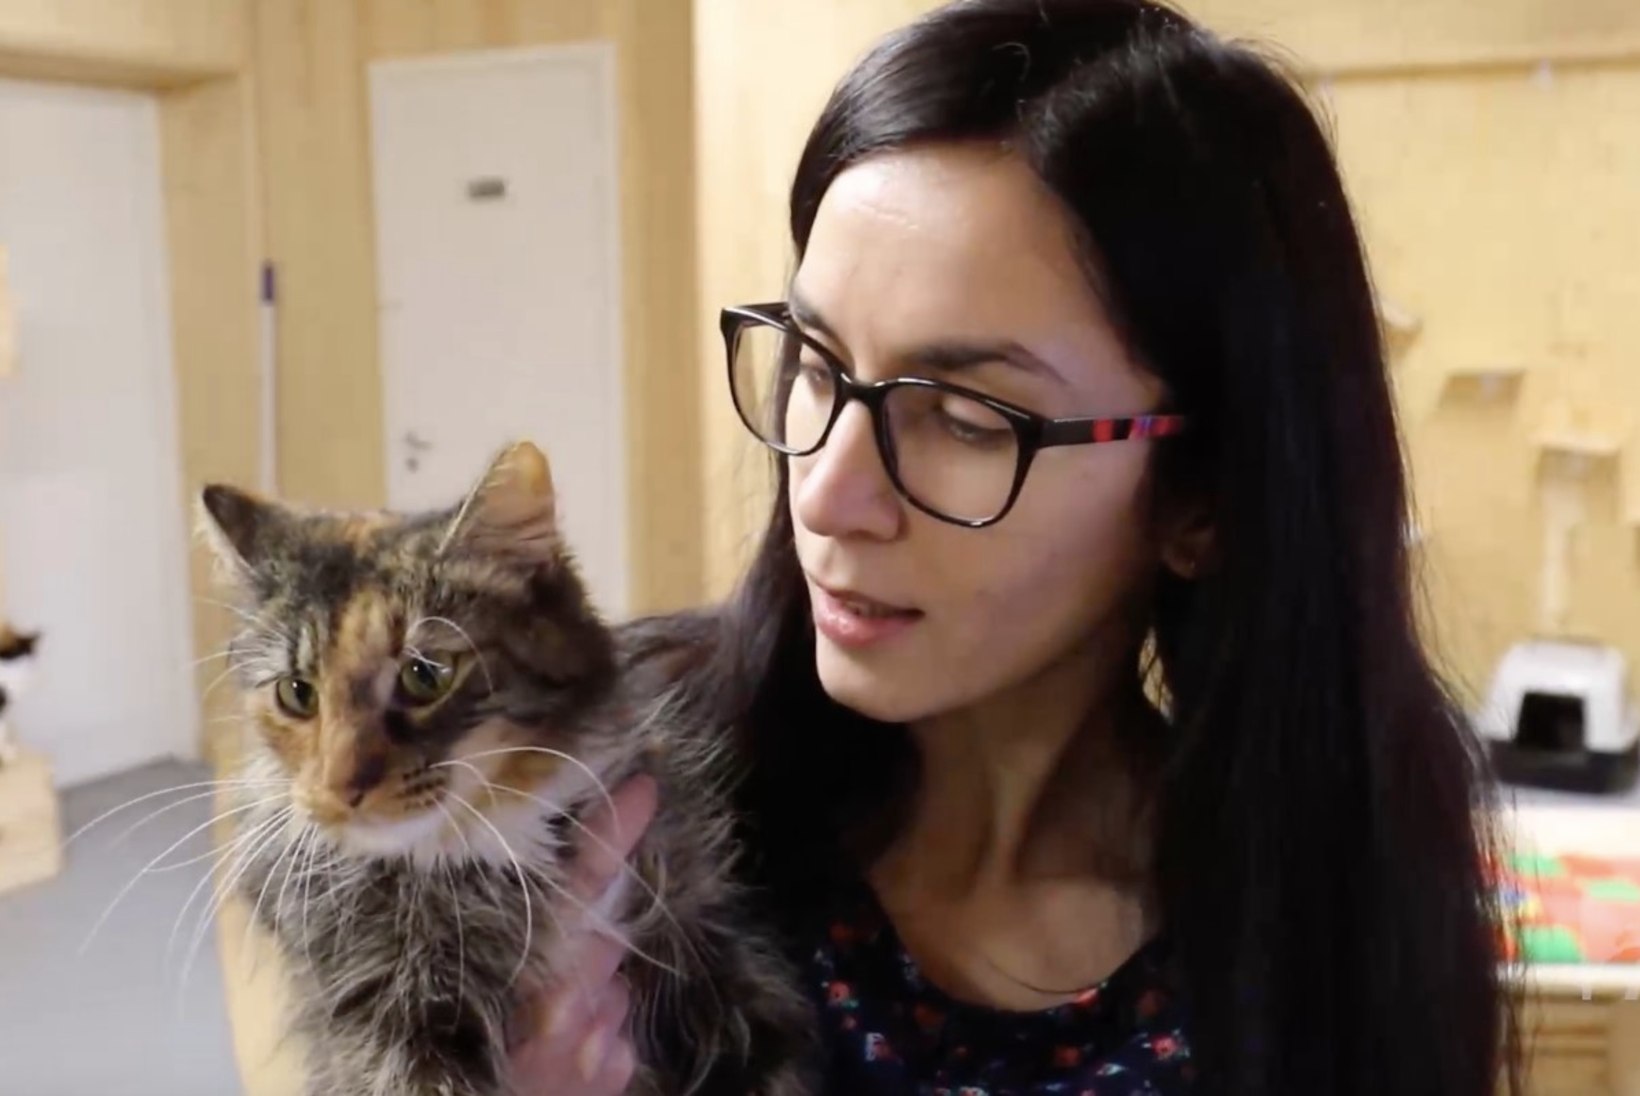 ÕHTULEHE VIDEO | Jõuluks koju: kassipojamõõtu kiisupreili Tabby ootab varjupaigas uut perekonda, kellele rõõmu tuua